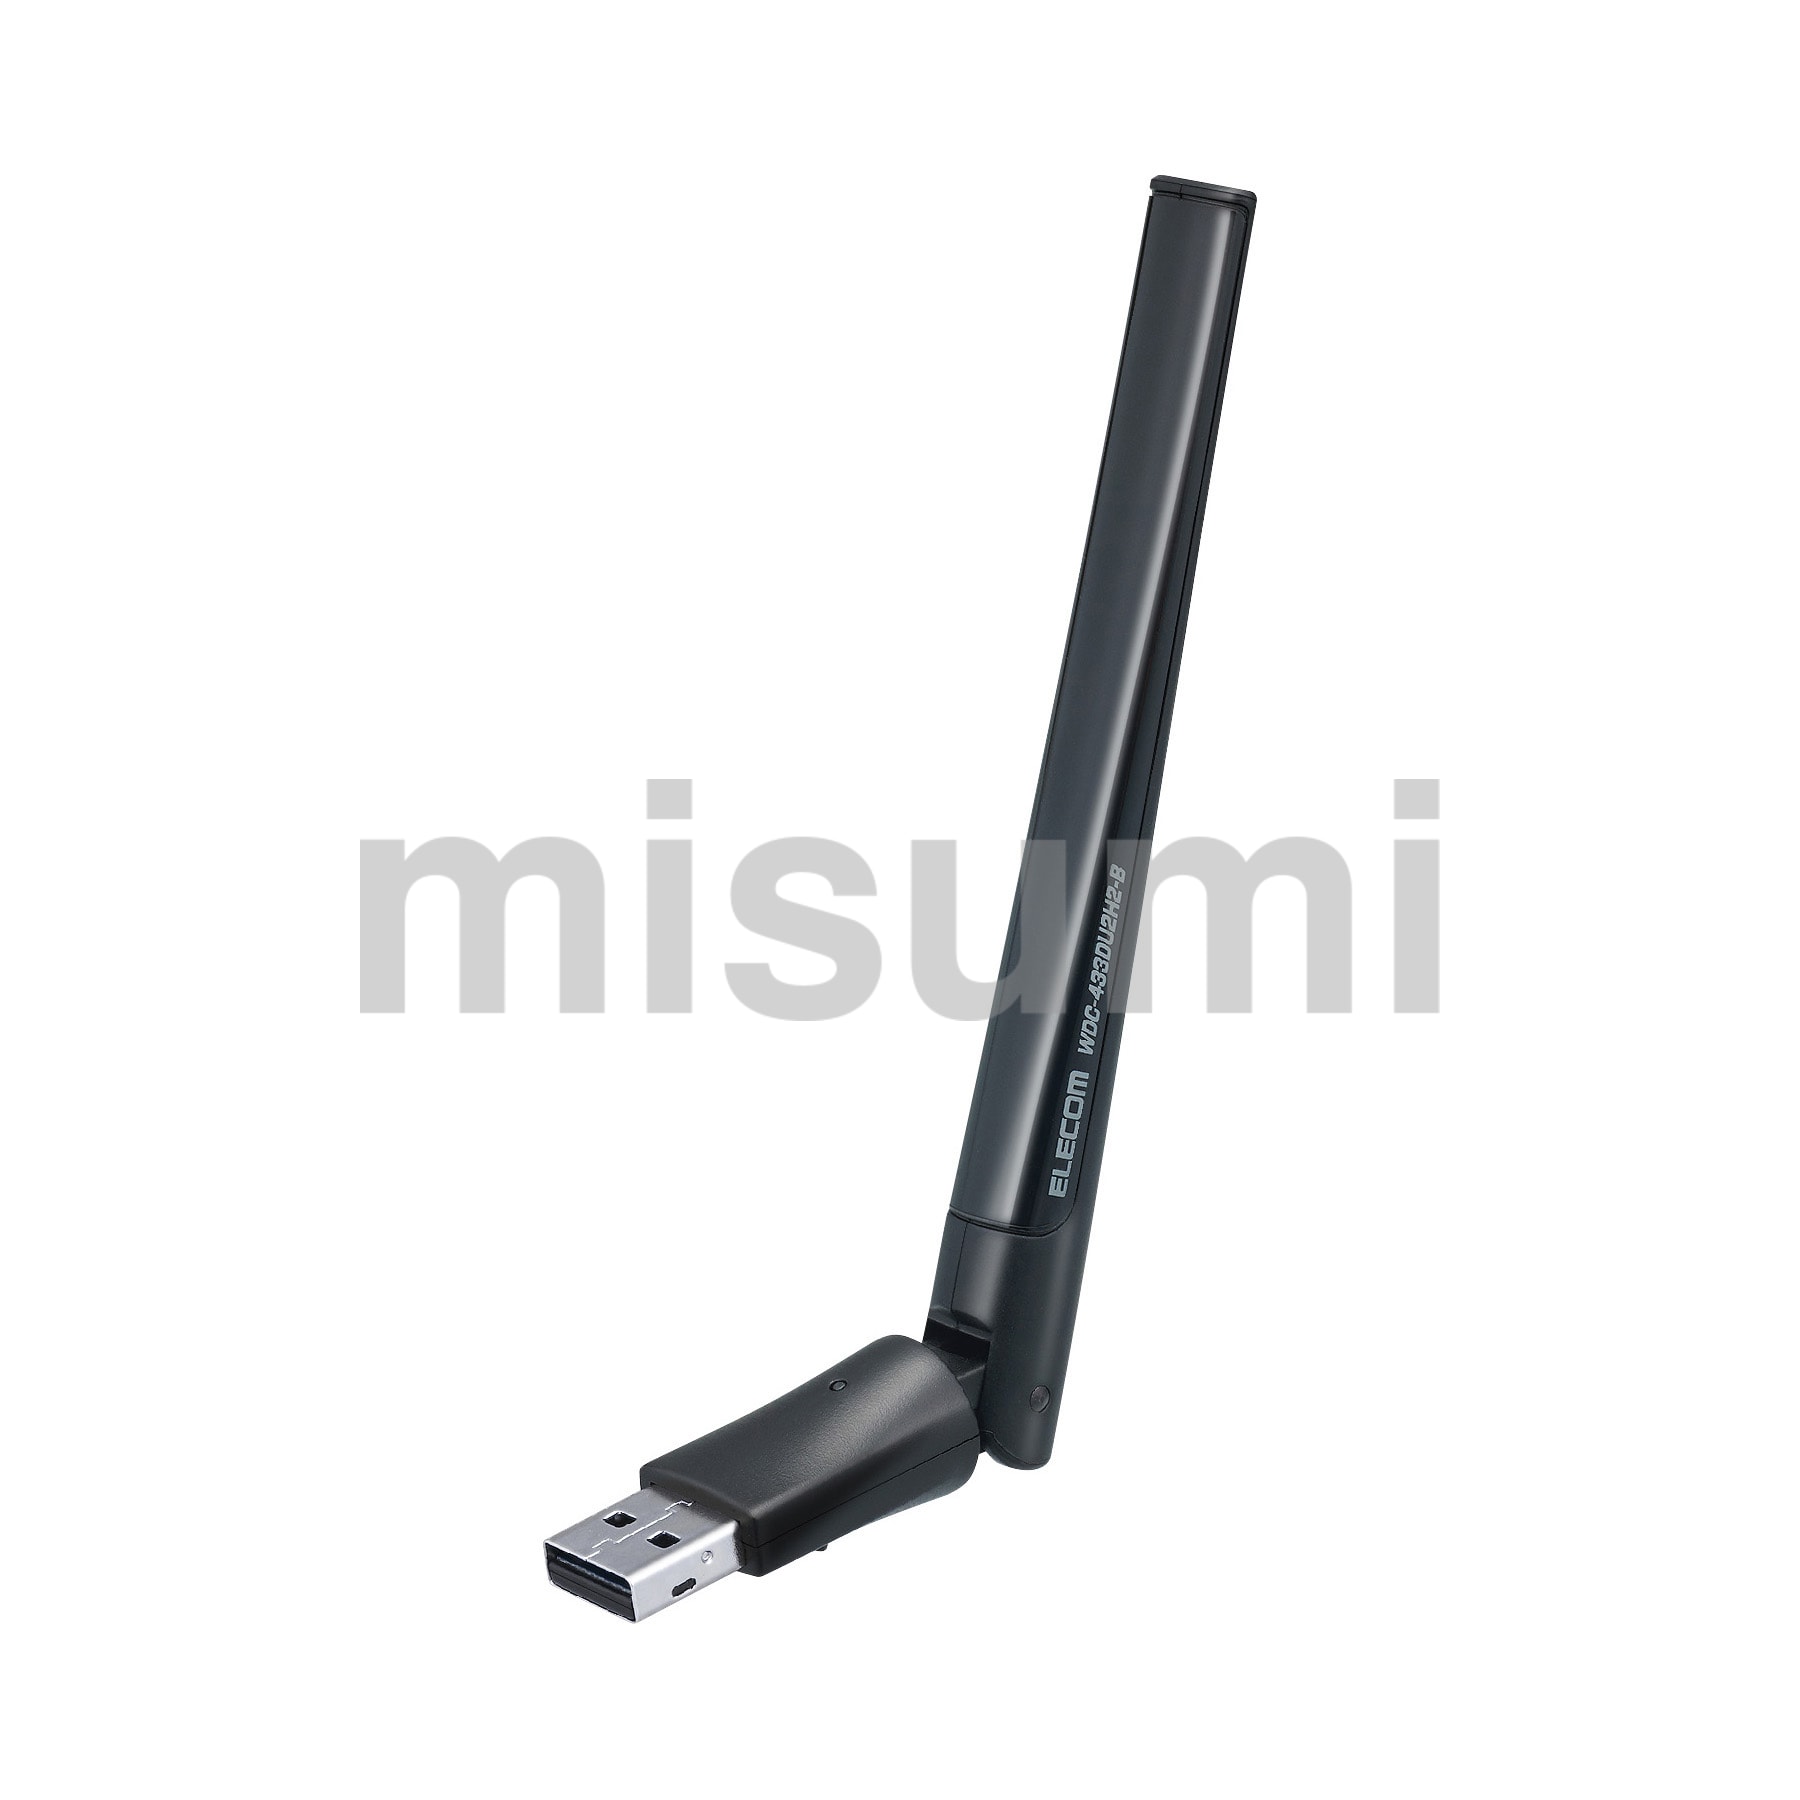 型番 マルチメディアポートSギガ Panasonic MISUMI(ミスミ)